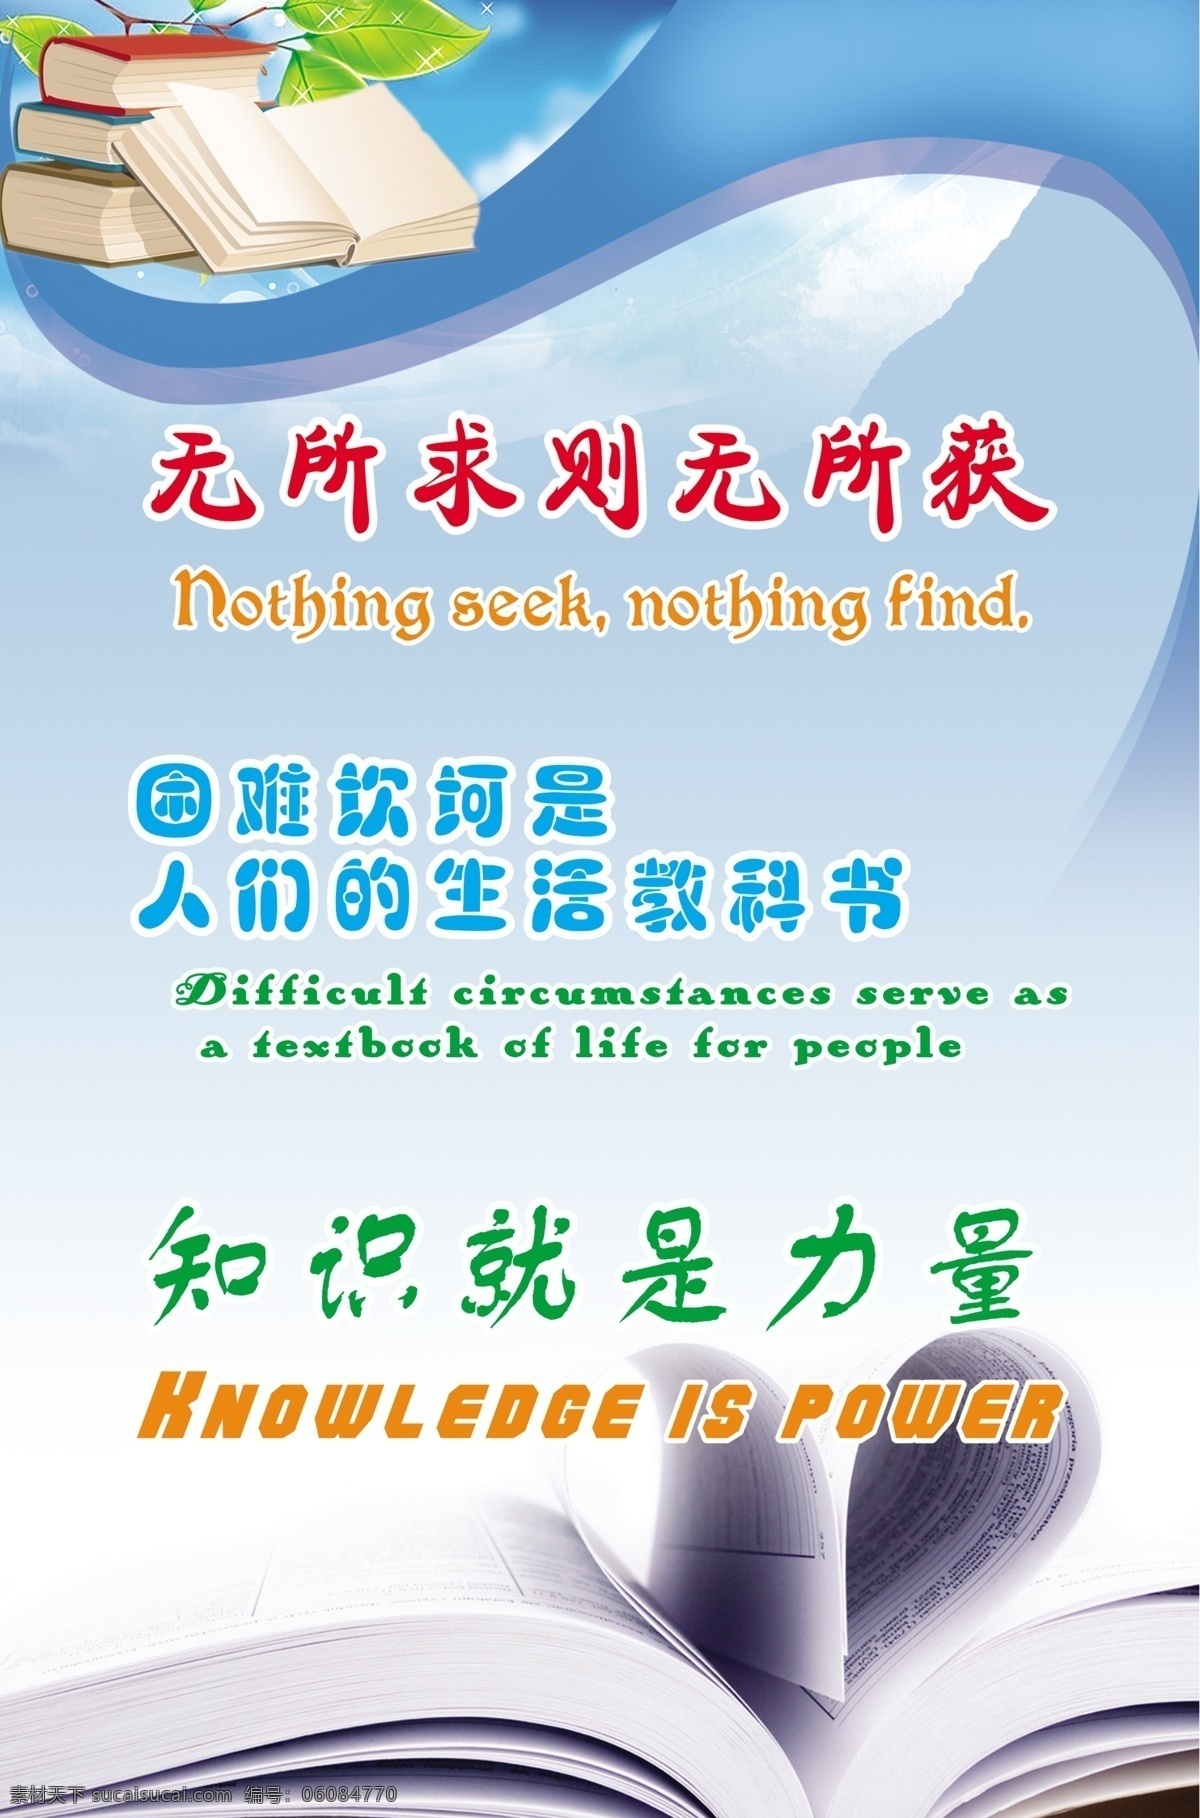 英语立志 标语 书 英语 汉语 dm宣传单 广告设计模板 源文件